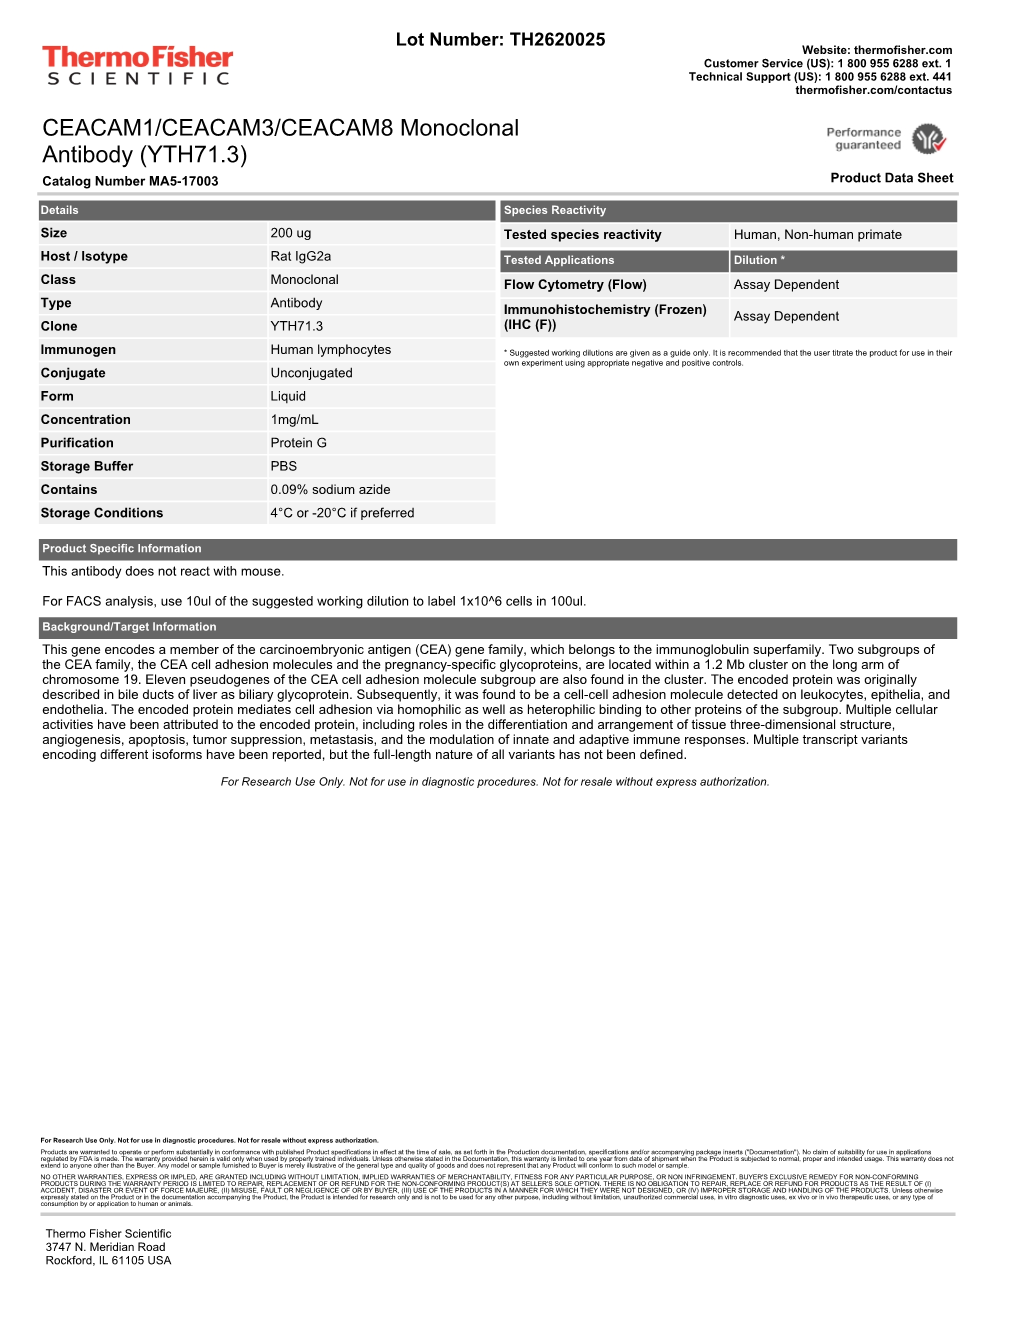 CEACAM1/CEACAM3/CEACAM8 Monoclonal Antibody (YTH71.3) Catalog Number MA5-17003 Product Data Sheet